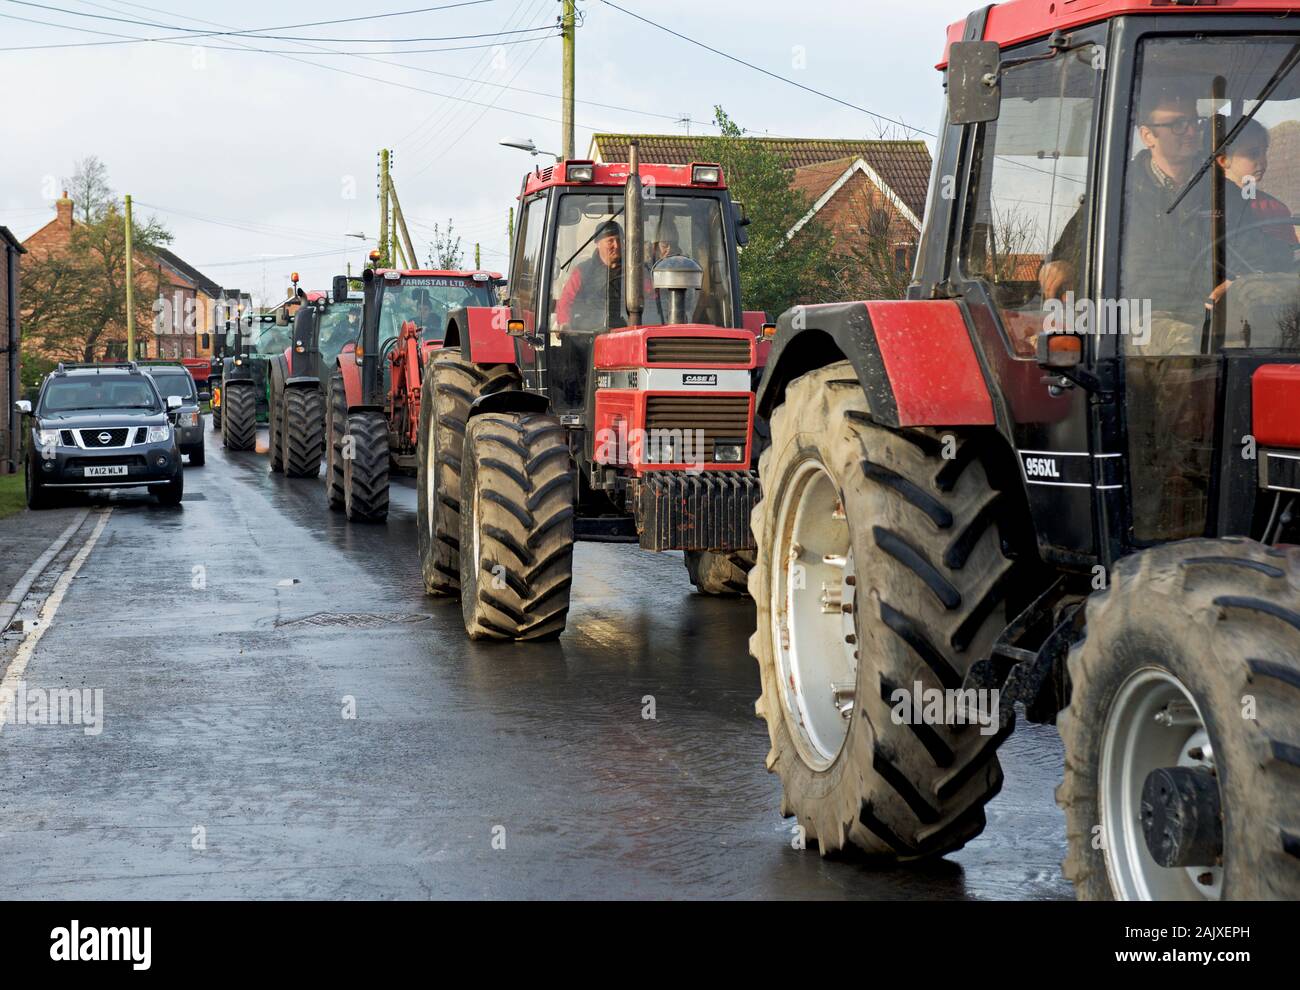 Traktor laufen, für Nächstenliebe, in der Ortschaft Asselby, East Yorkshire, England, Großbritannien Stockfoto